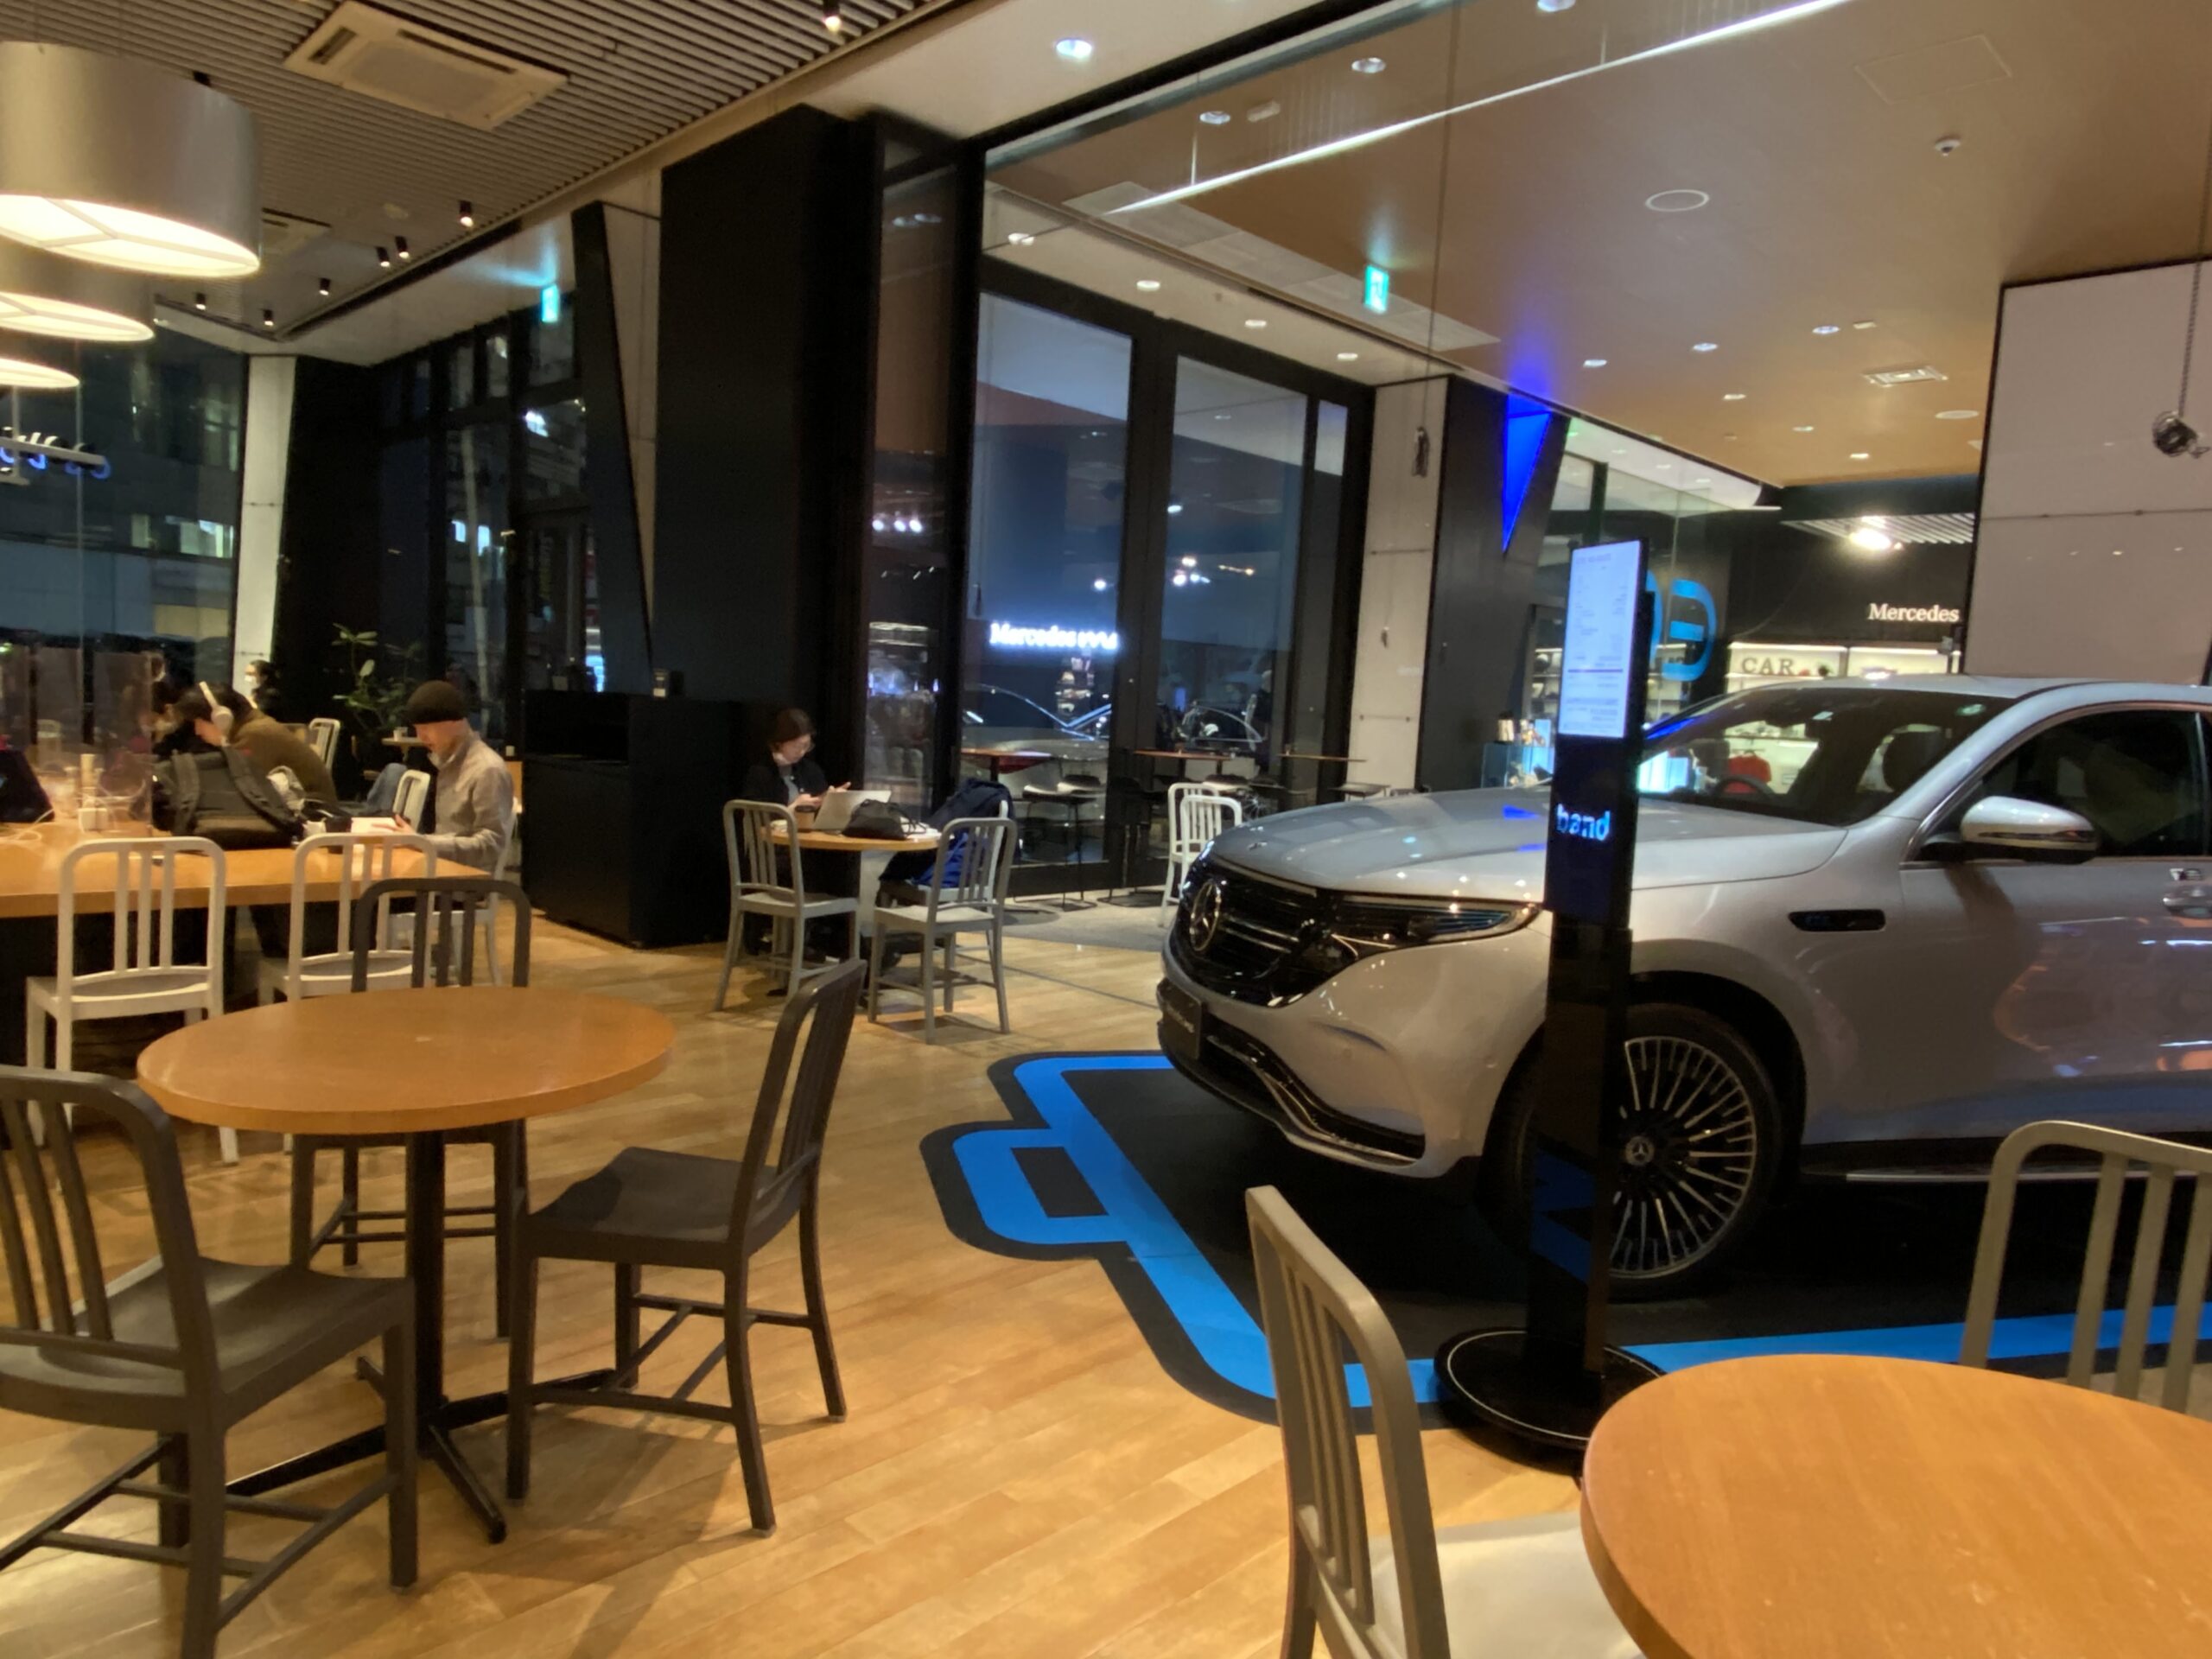 ブルートラベルエンジニア パソコン作業（プログラミング学習環境）におすすめのカフェ|青山・六本木 Mercedes me Tokyo/DOWNSTAIRS COFFEE（ダウンステアーズコーヒー）